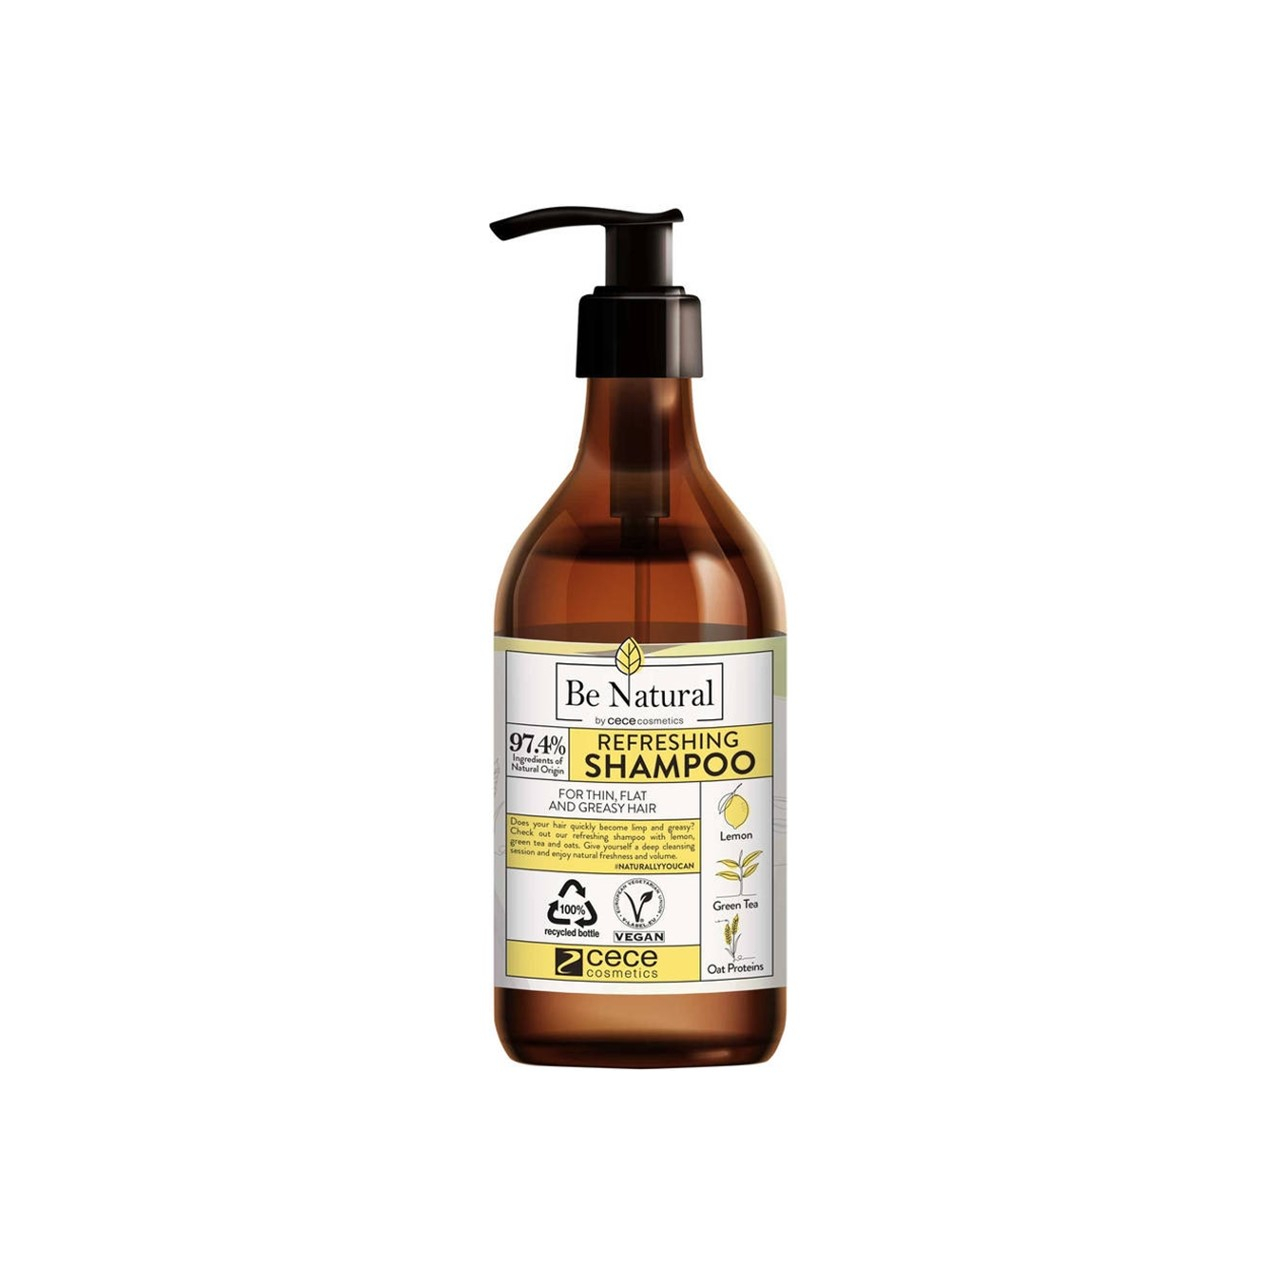 Be Natural Refreshing Shampoo 270ml (9.13 fl oz)